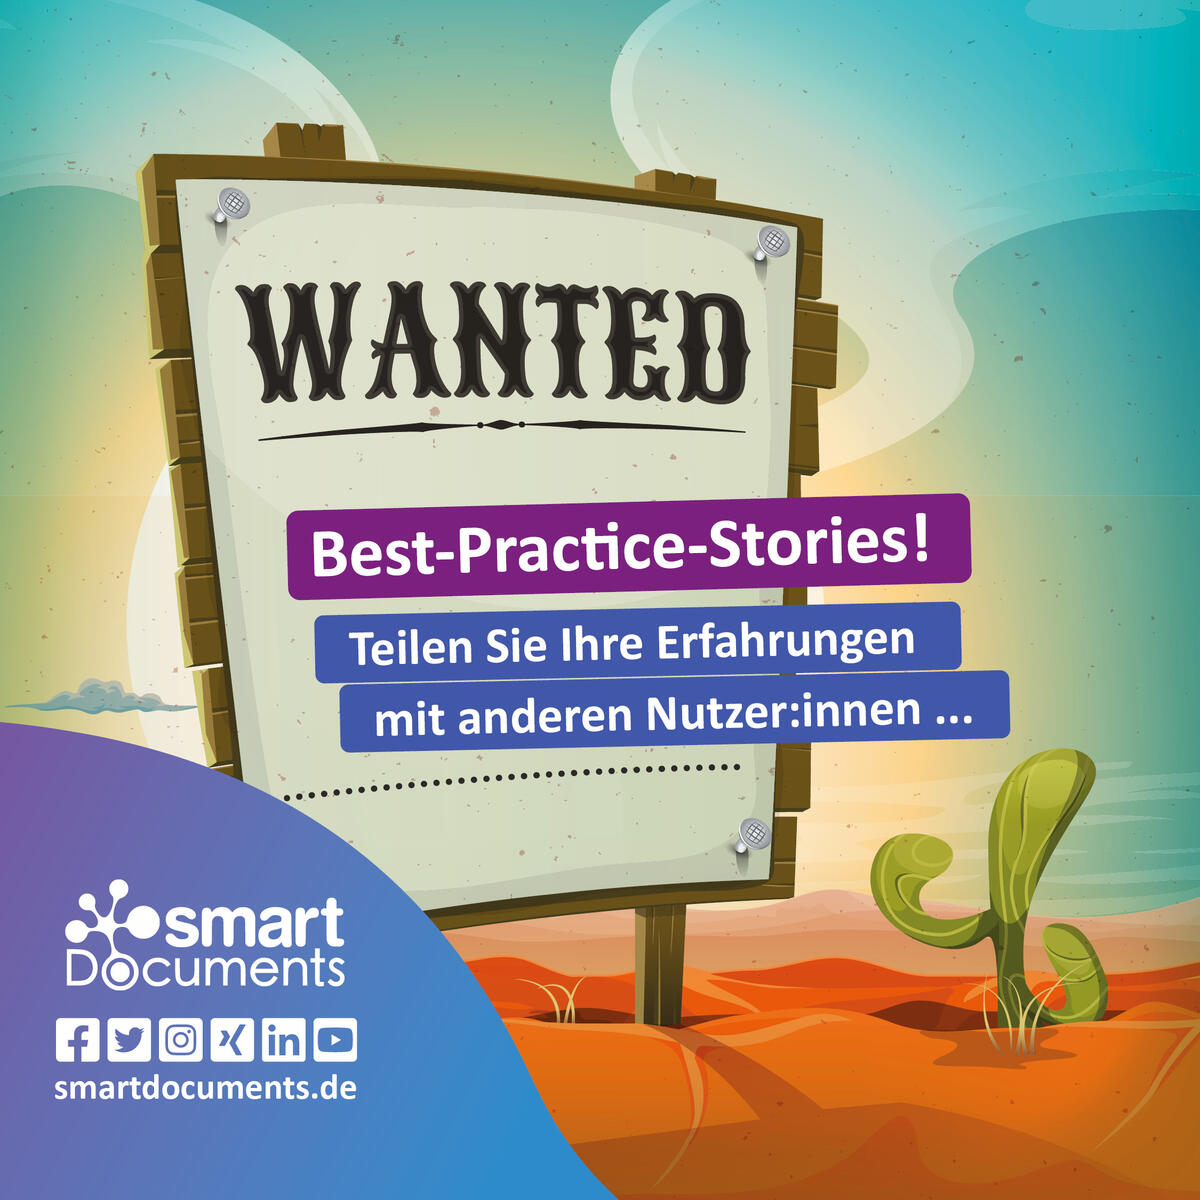 Wanted! Wir suchen Best-Practice-Stories!
Teilen Sie Ihre Erfahrungen mit anderen Nutzer:innen